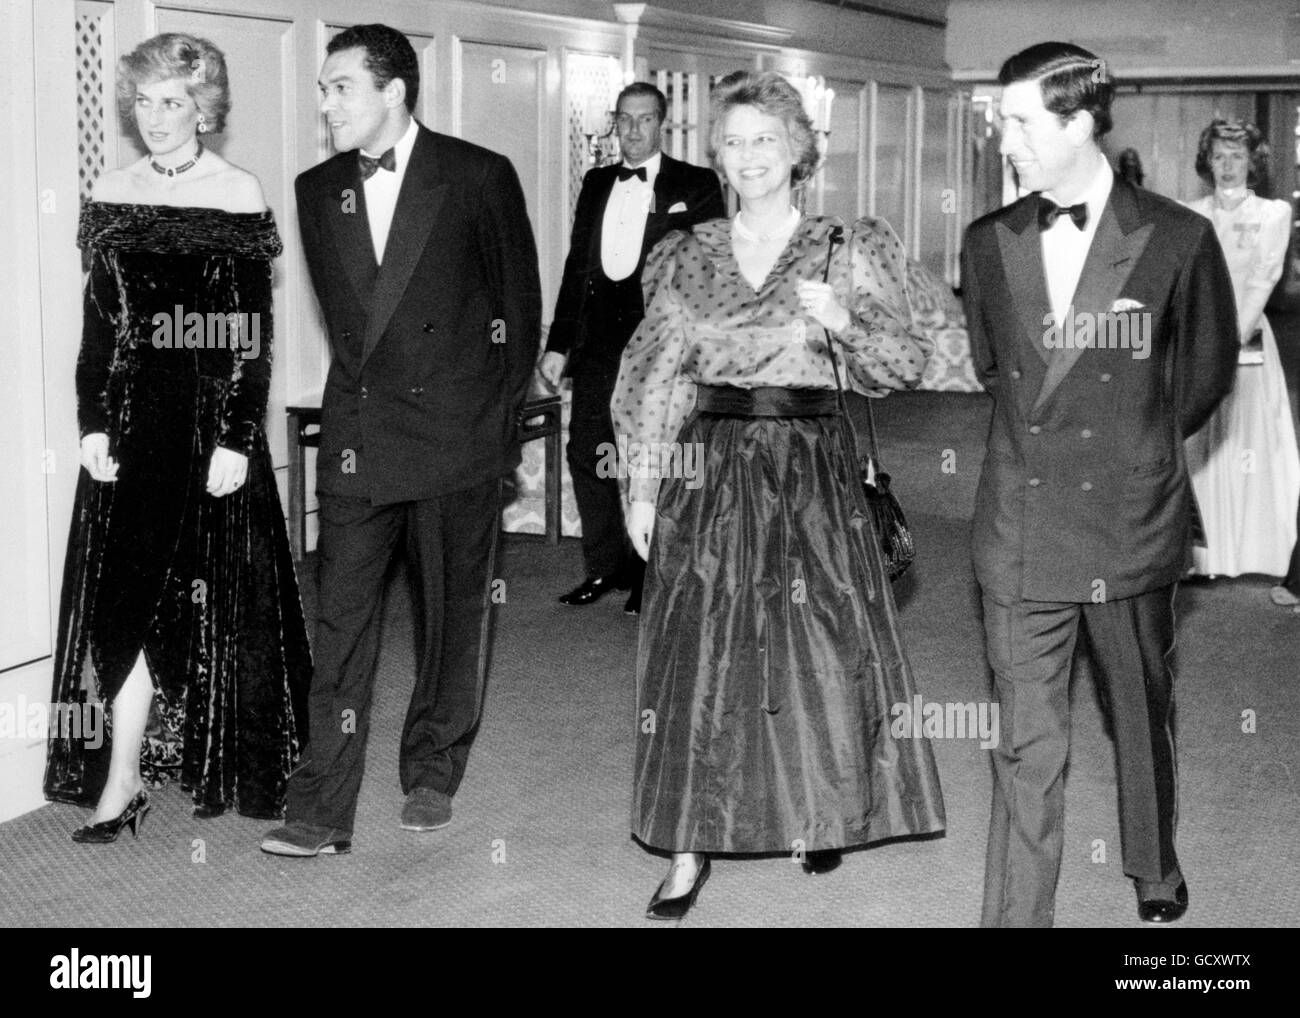 La princesse de Galles accompagnée de Bruce Oldfield, l'un de ses couturiers préférés, tandis que le prince de Galles marche avec Tessa Bailing de Barnados, à l'hôtel Grosvenor House.La princesse porte une robe de velours violet écrasée à l'épaule d'Oldfield. Banque D'Images